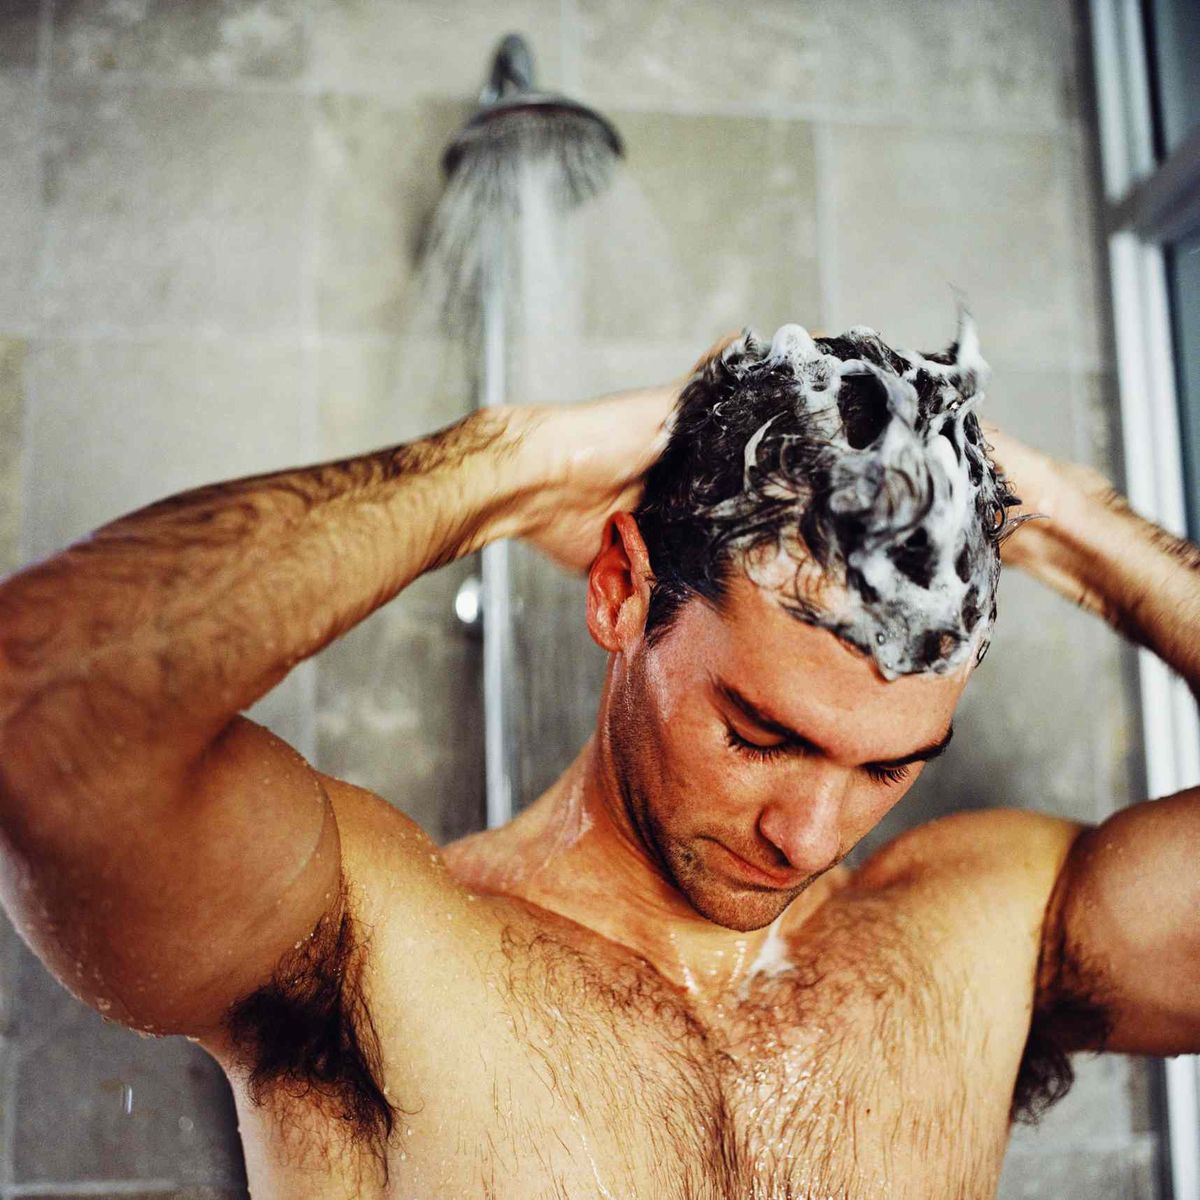 čovjek pere kosu pod tušem